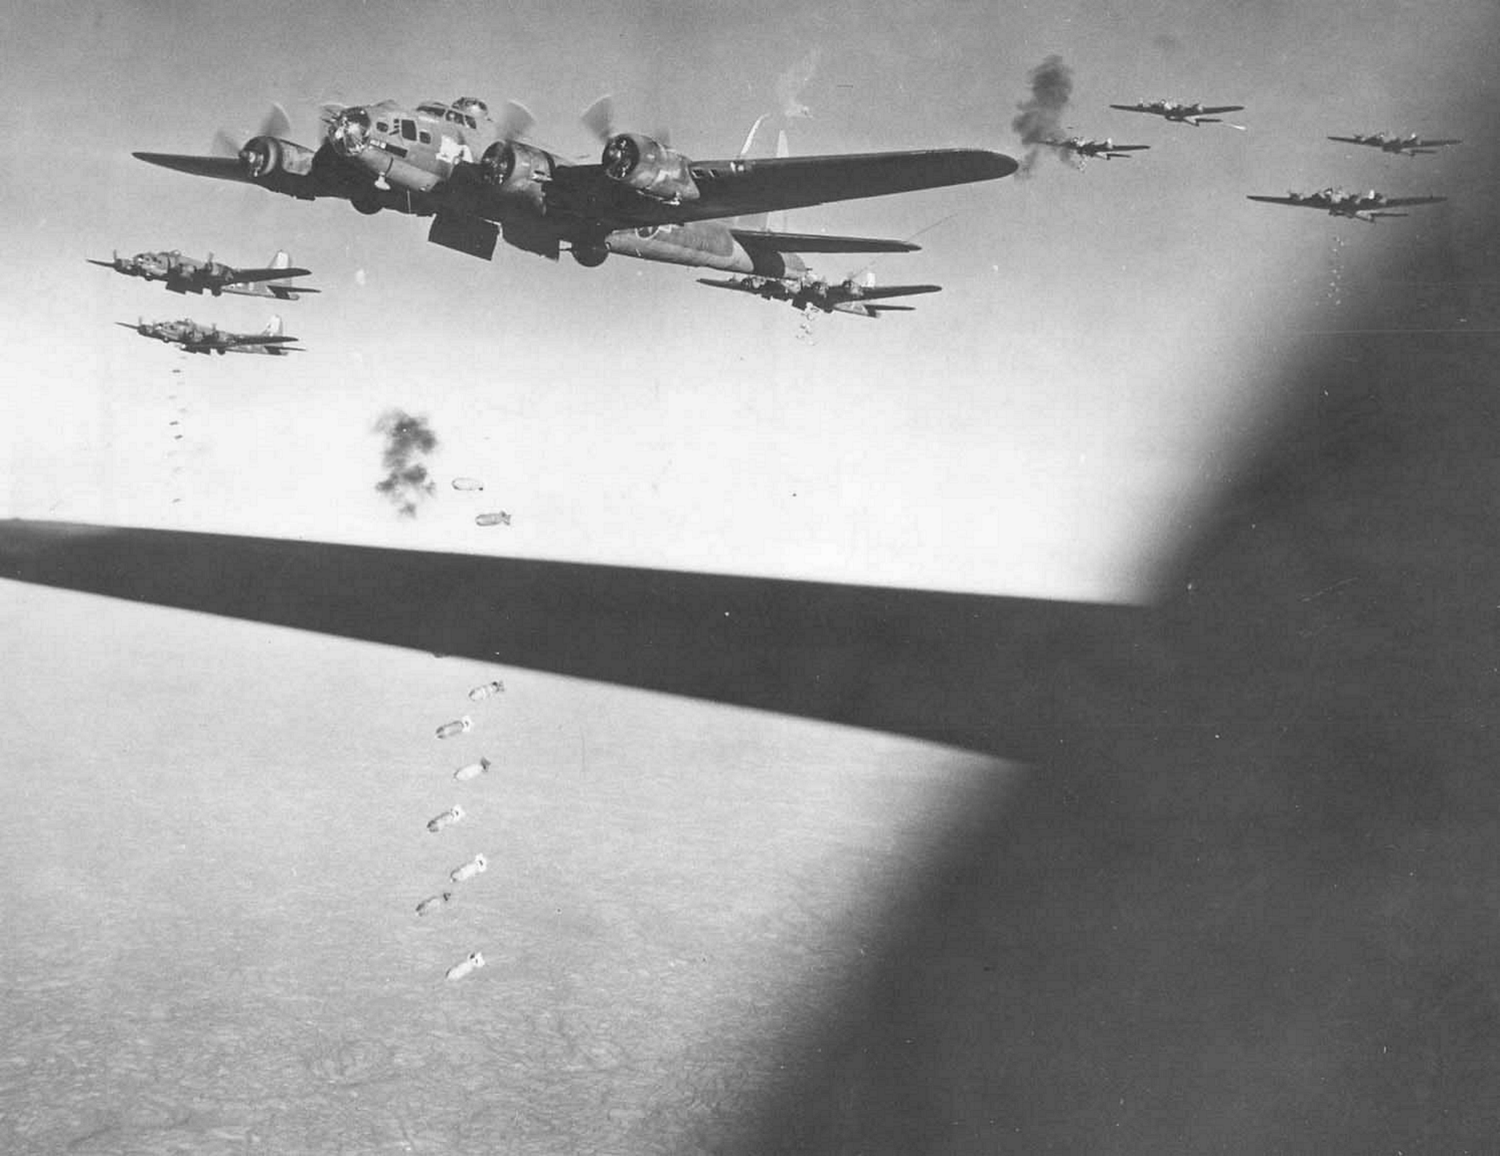 Бомбардировки второй мировой войны. Боинг b-17 1943. Бомбардировщик f 17. Бомбардировки Германии 1943-1945. Стратегические бомбардировки Германии в 1943 году.